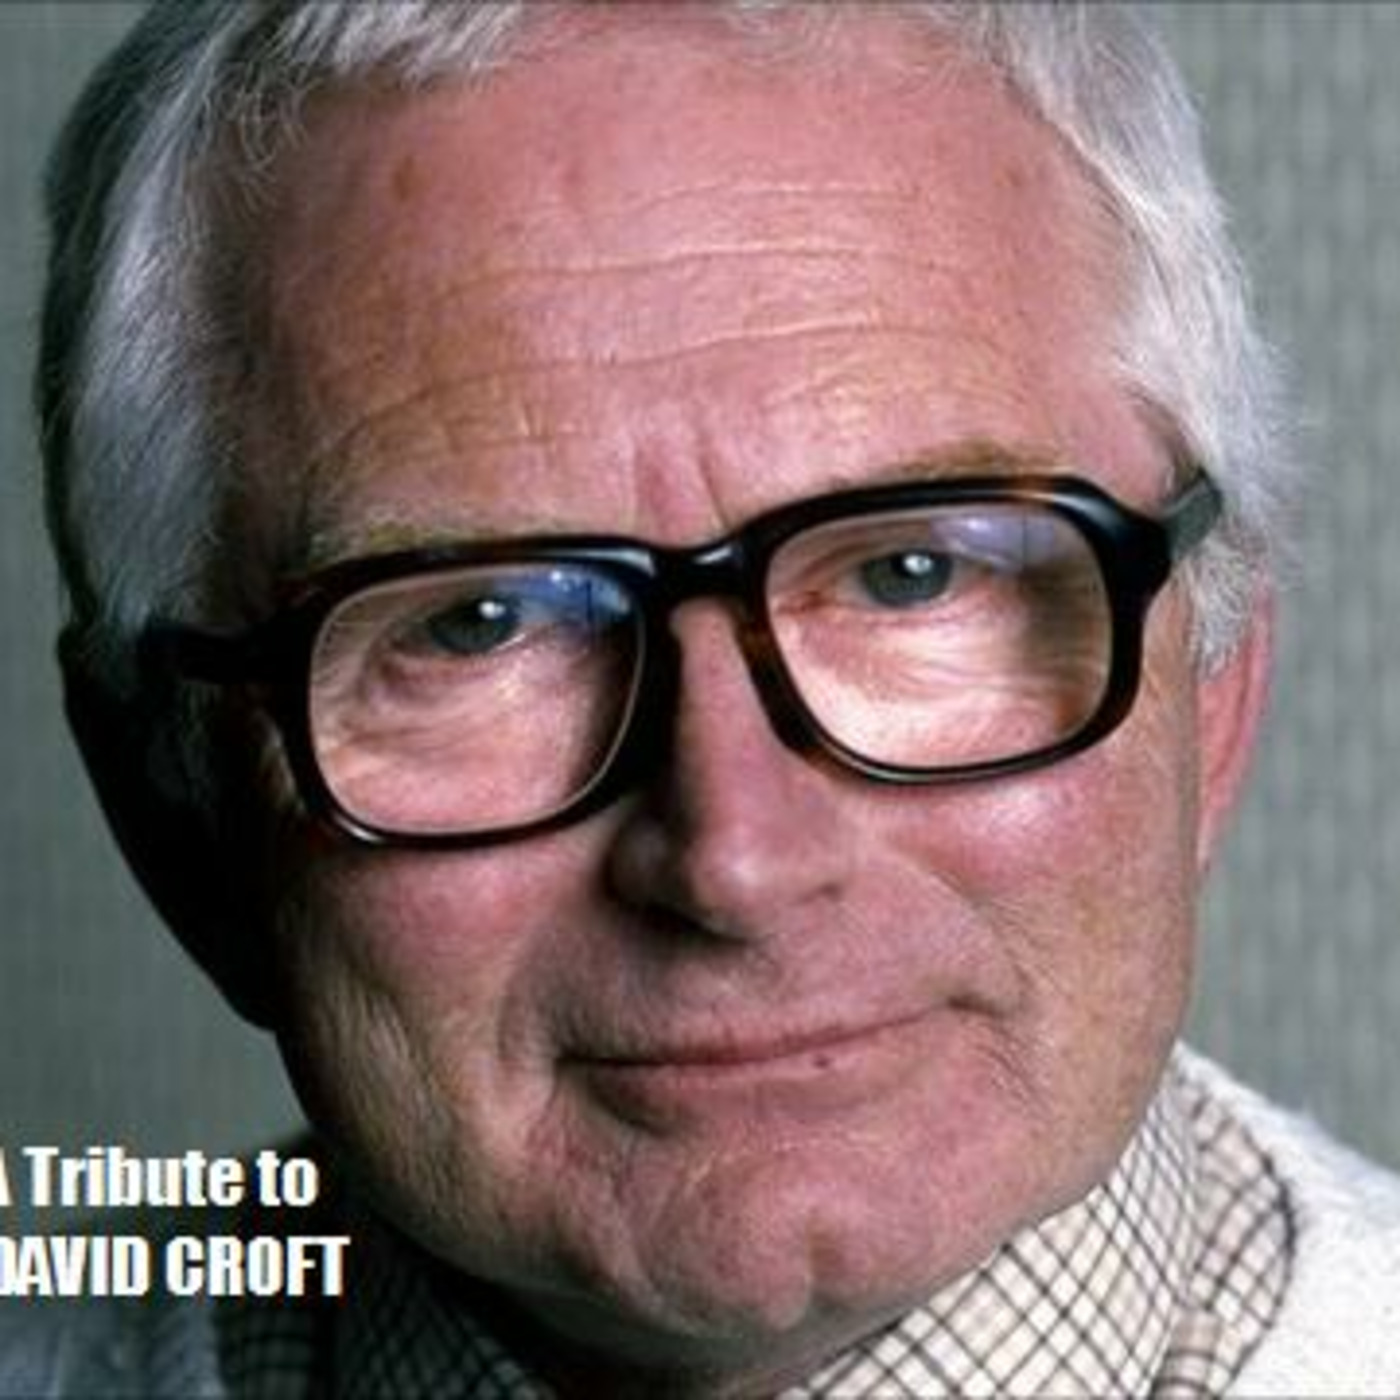 A tribute to David Croft